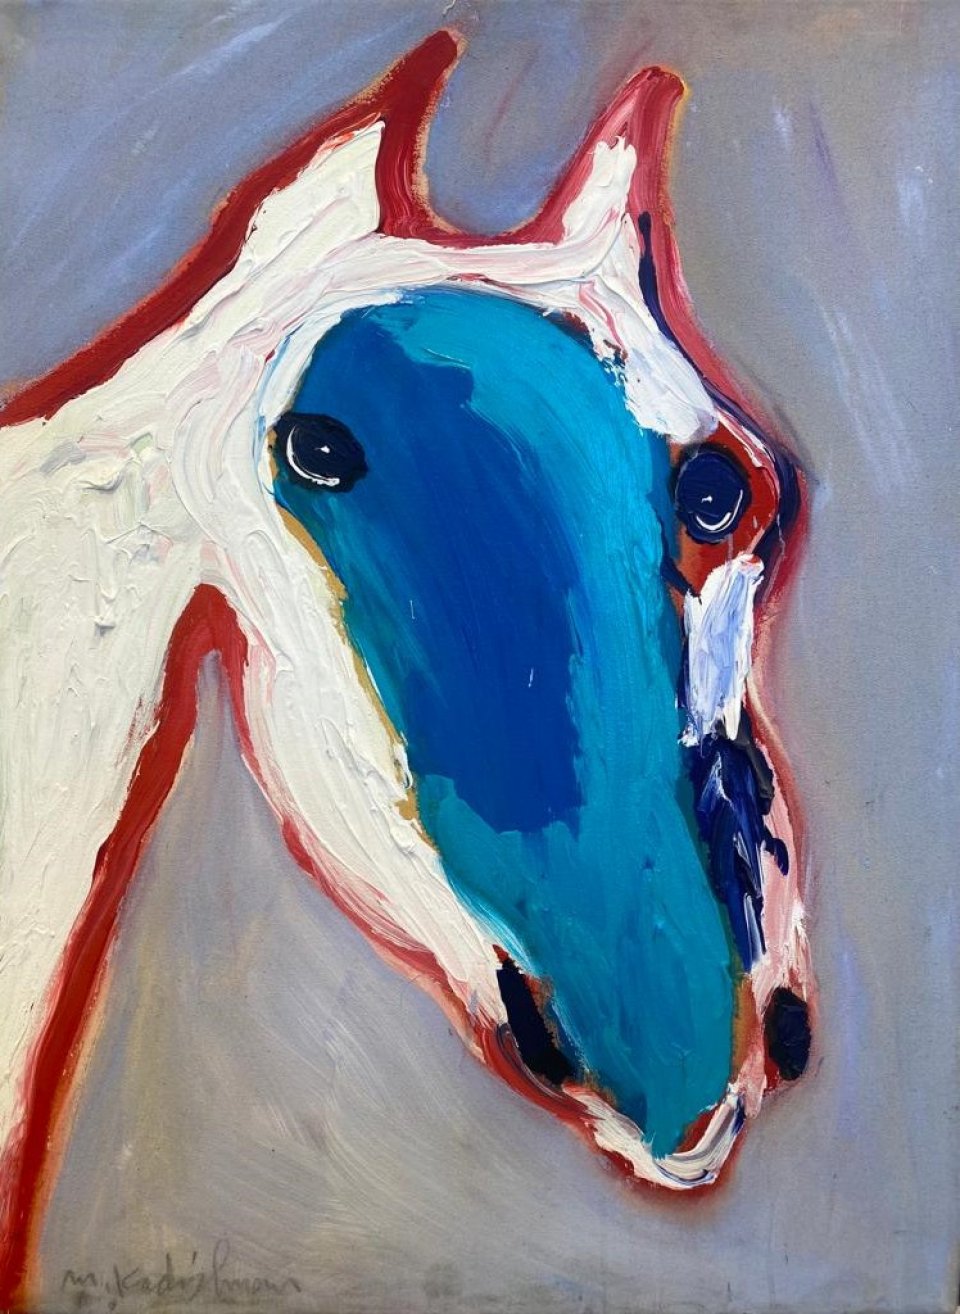 ראש סוס עם כתם כחול - מוקדמת ונדירה!